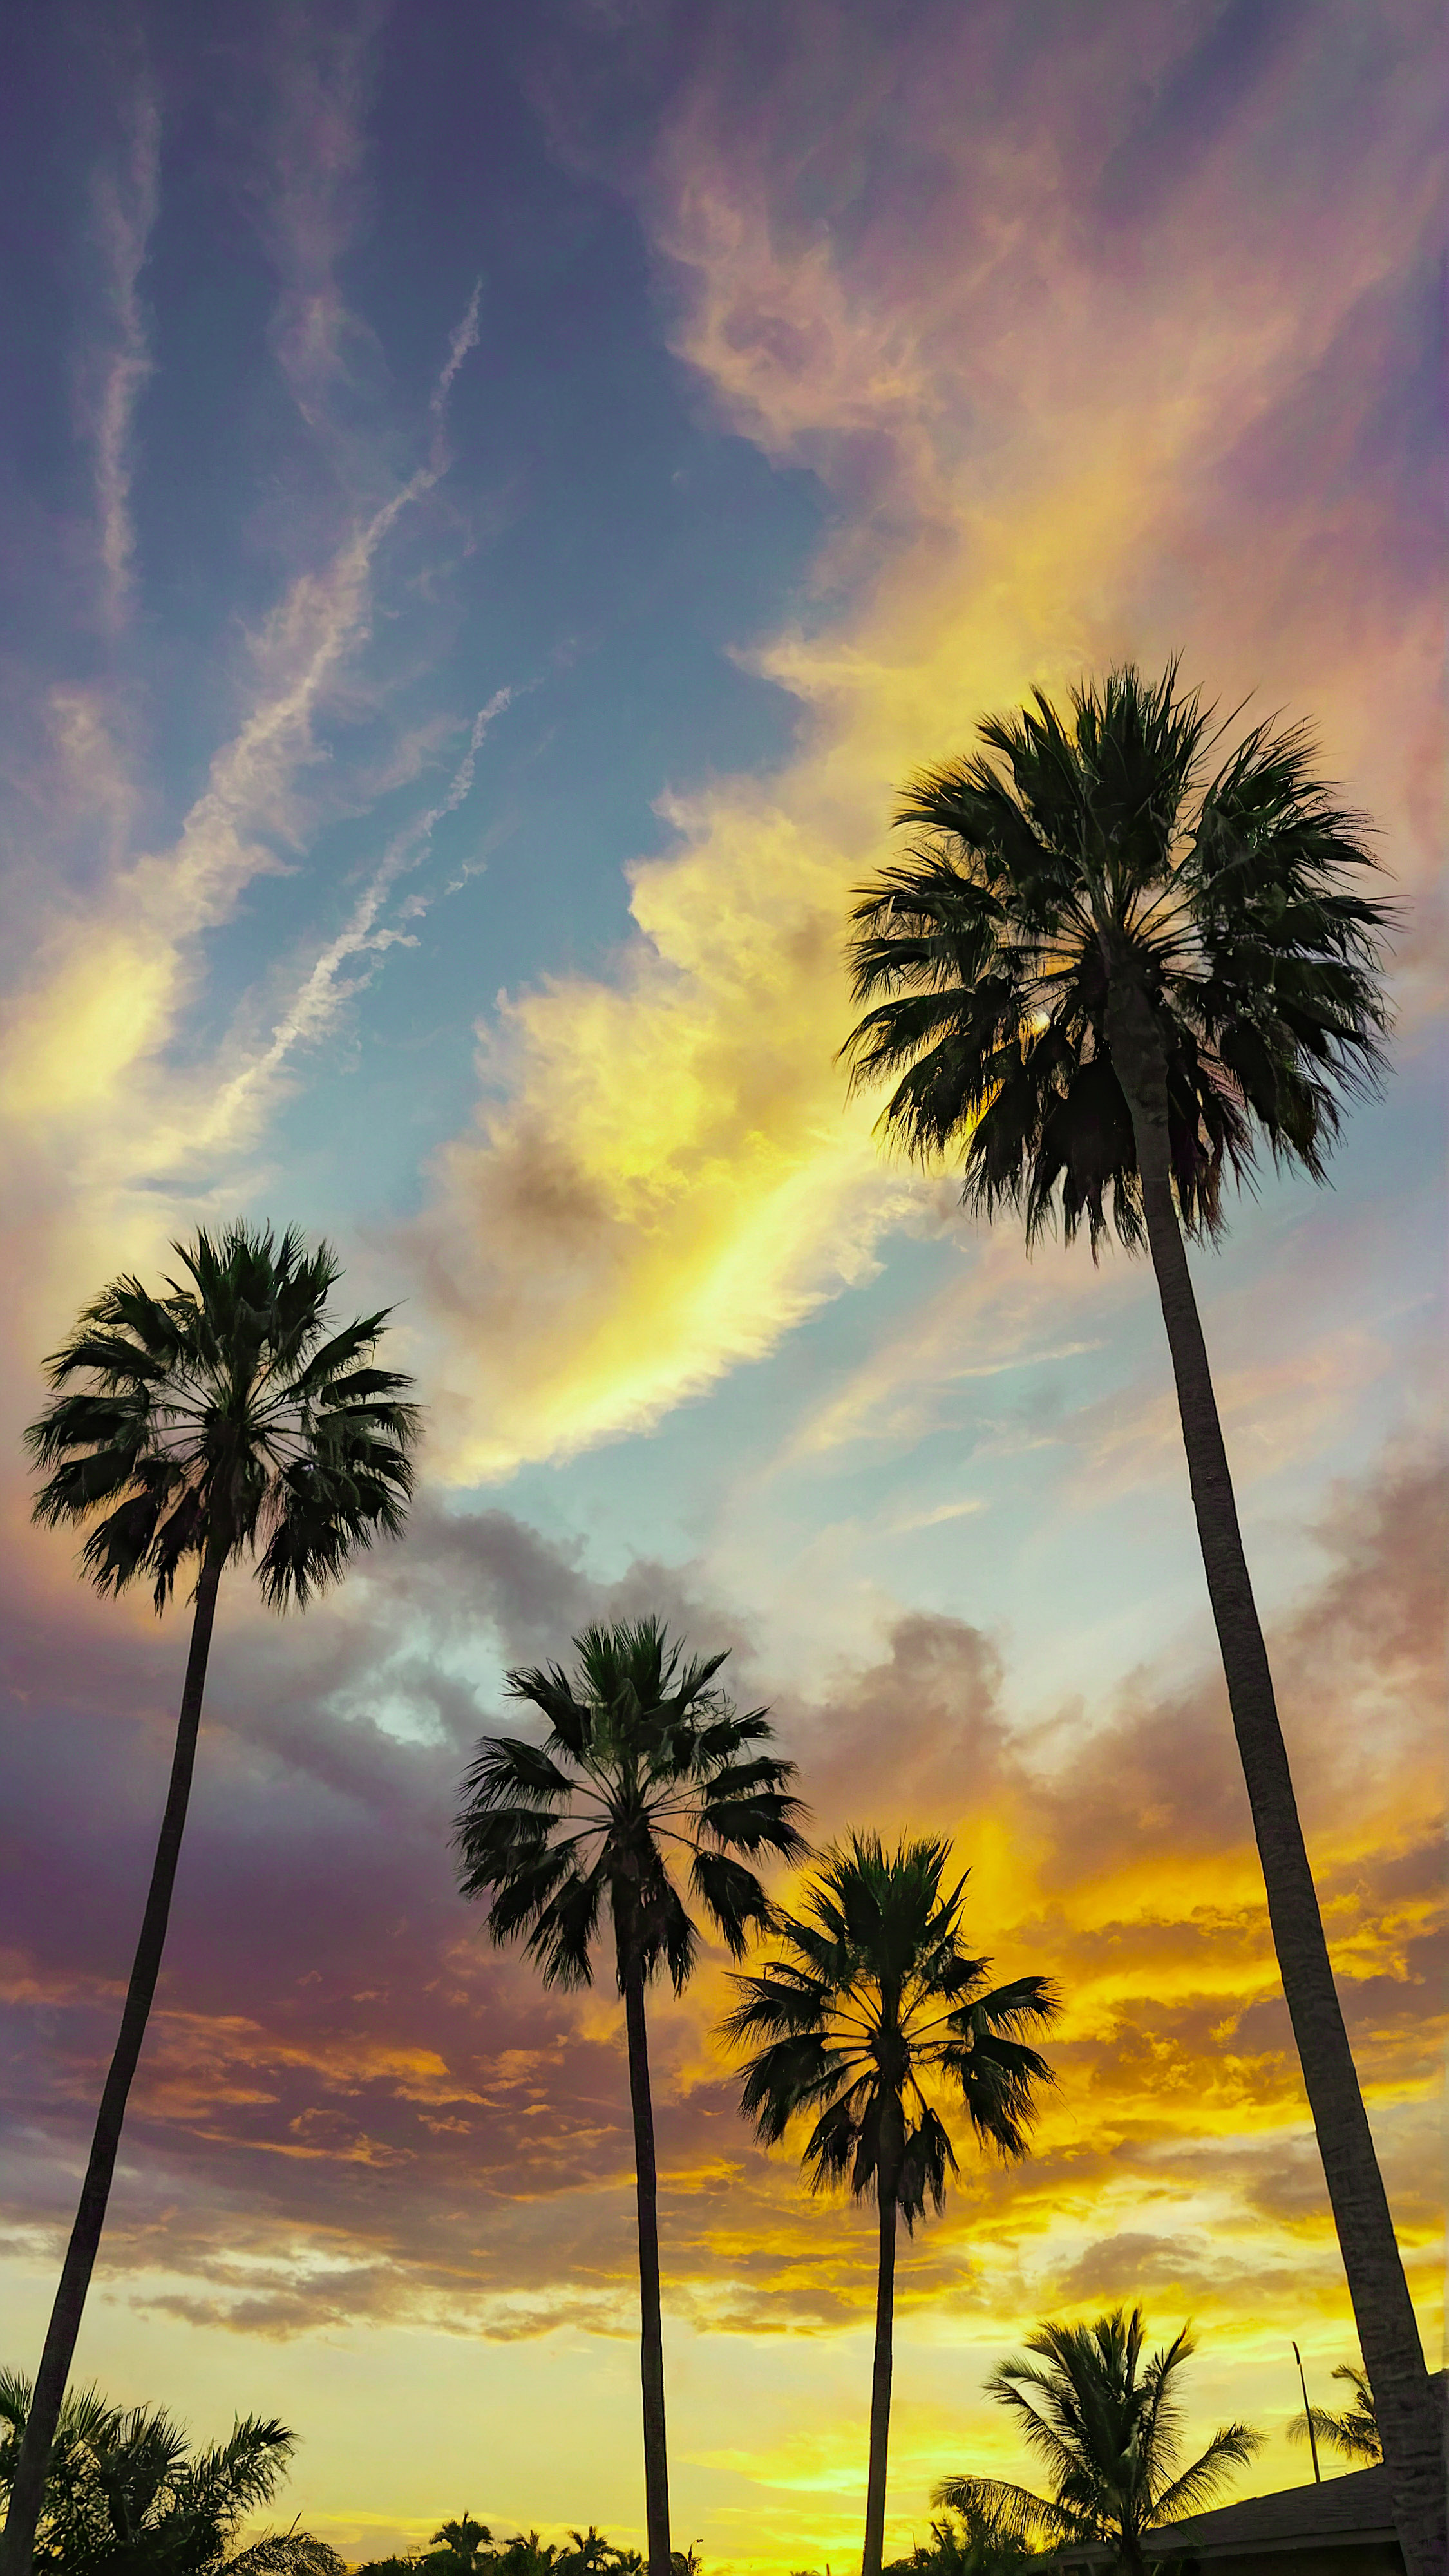 Profitez de la beauté et du style de notre arrière-plan esthétique pour iPhone, présentant un ciel serein et coloré rempli de nuages duveteux, des palmiers au premier plan, et des rayons de lumière traversant l'atmosphère.